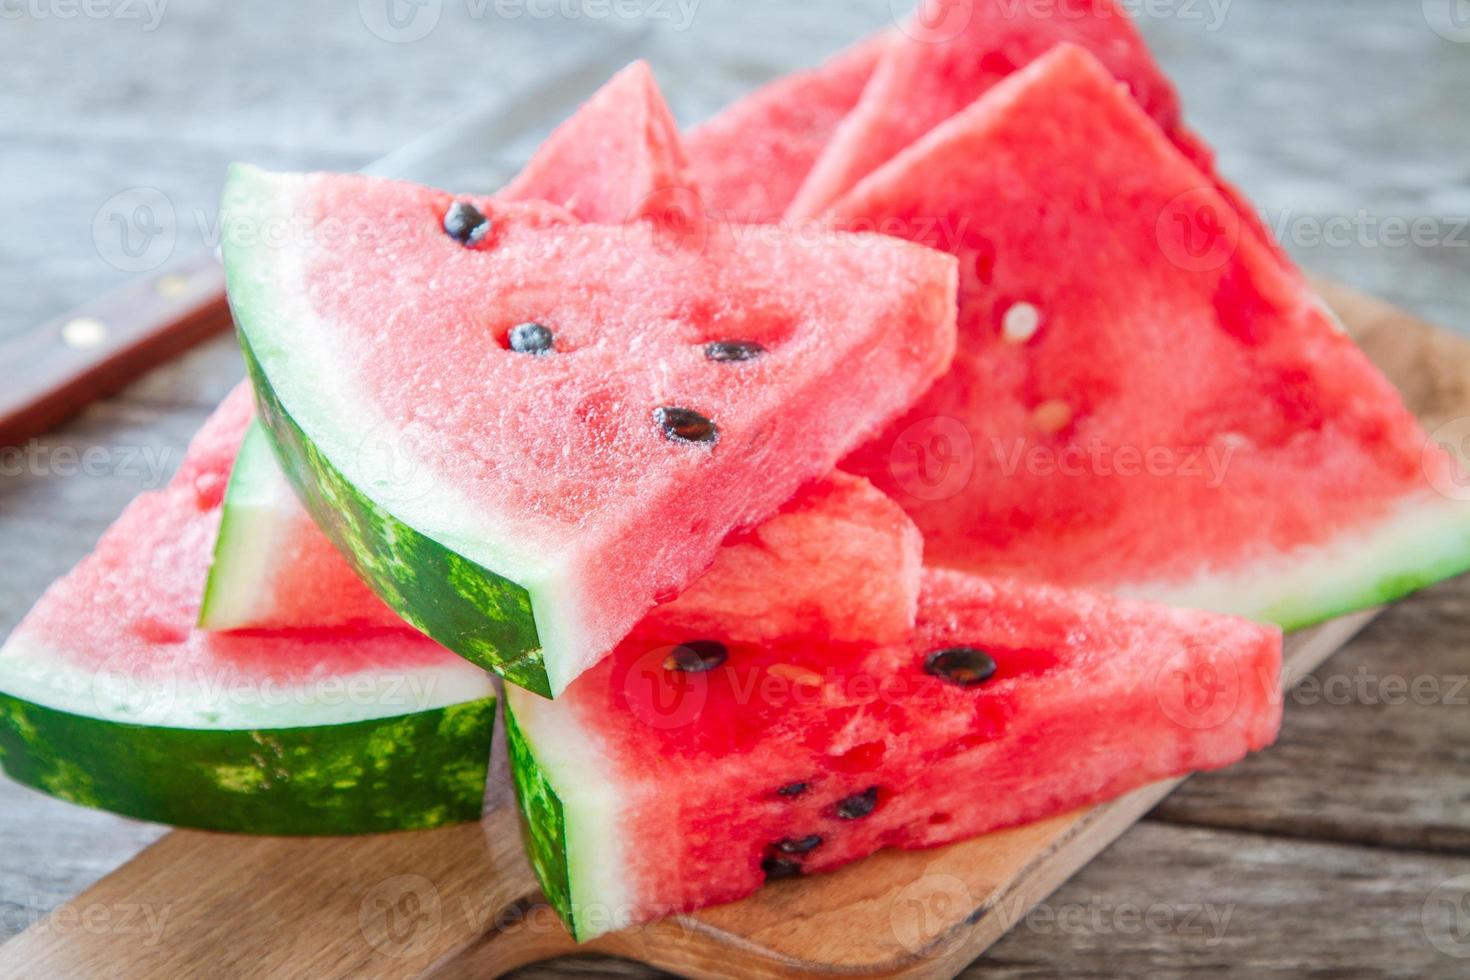 skivor av färsk saftig organisk vattenmelon foto